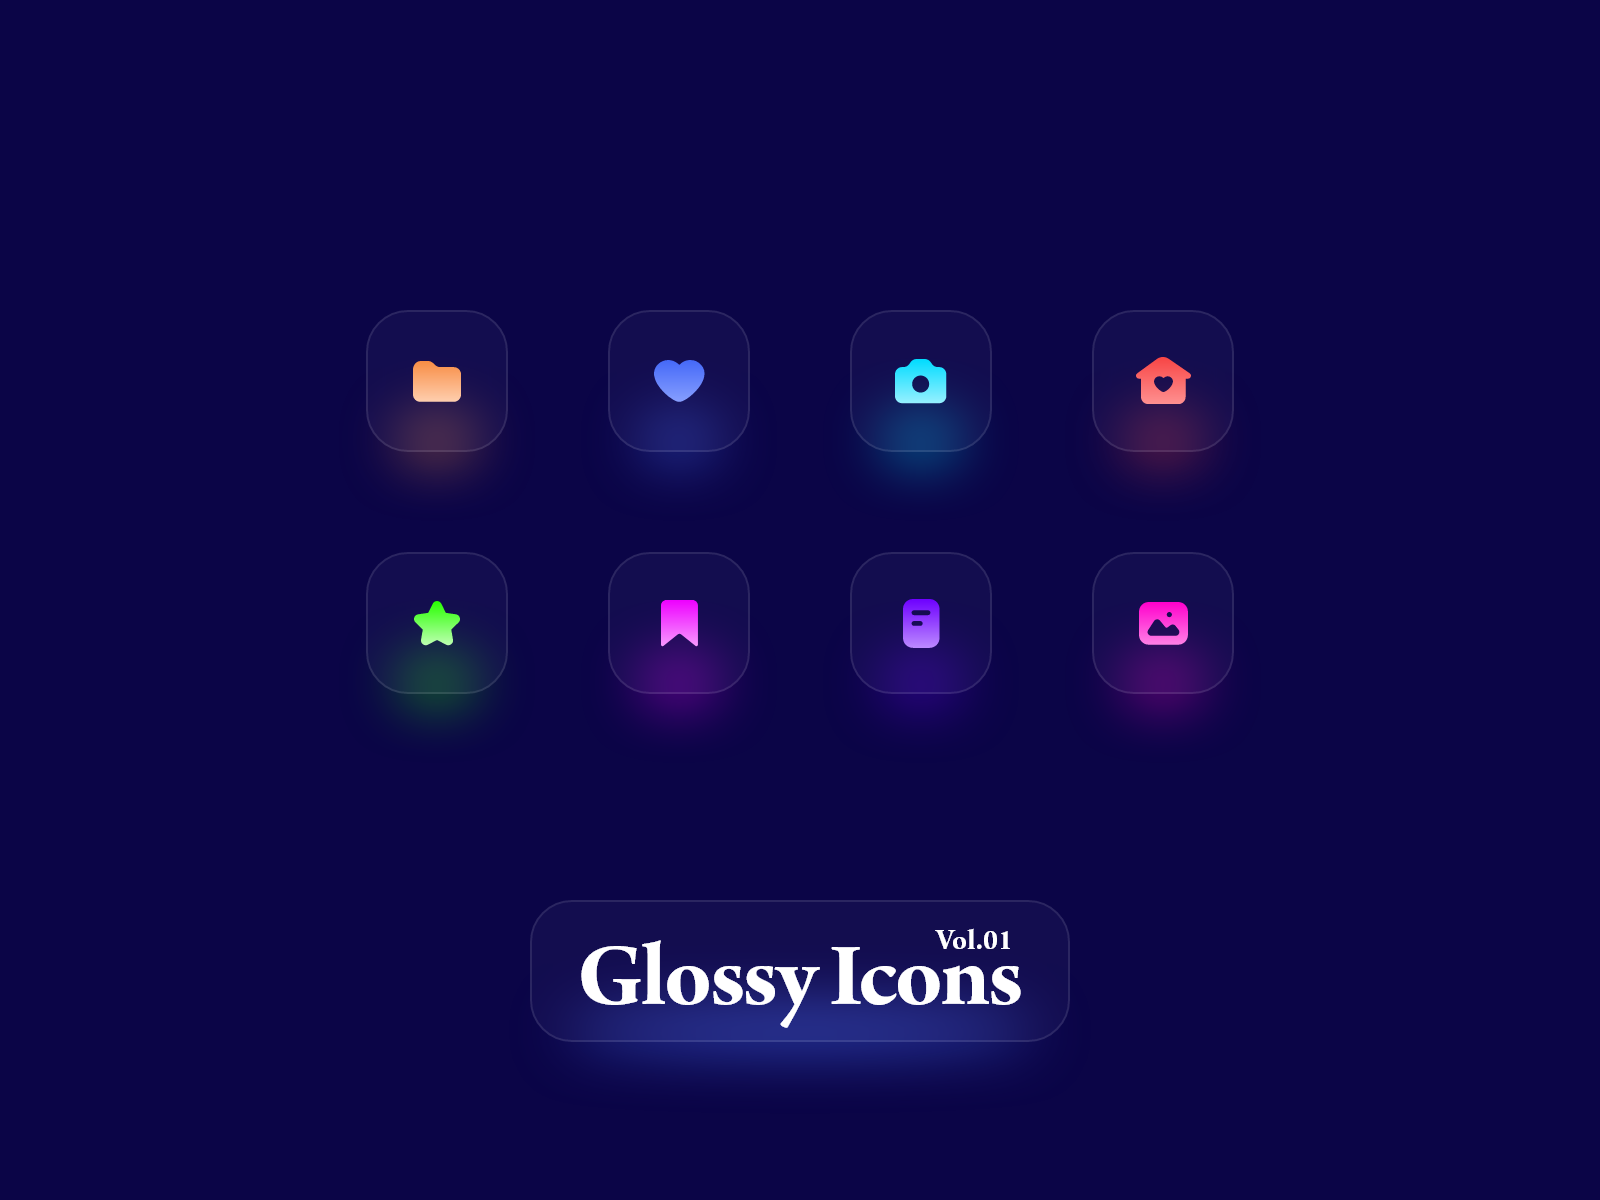 Glassmorphism 毛玻璃风格icon图标 .xd素材下载